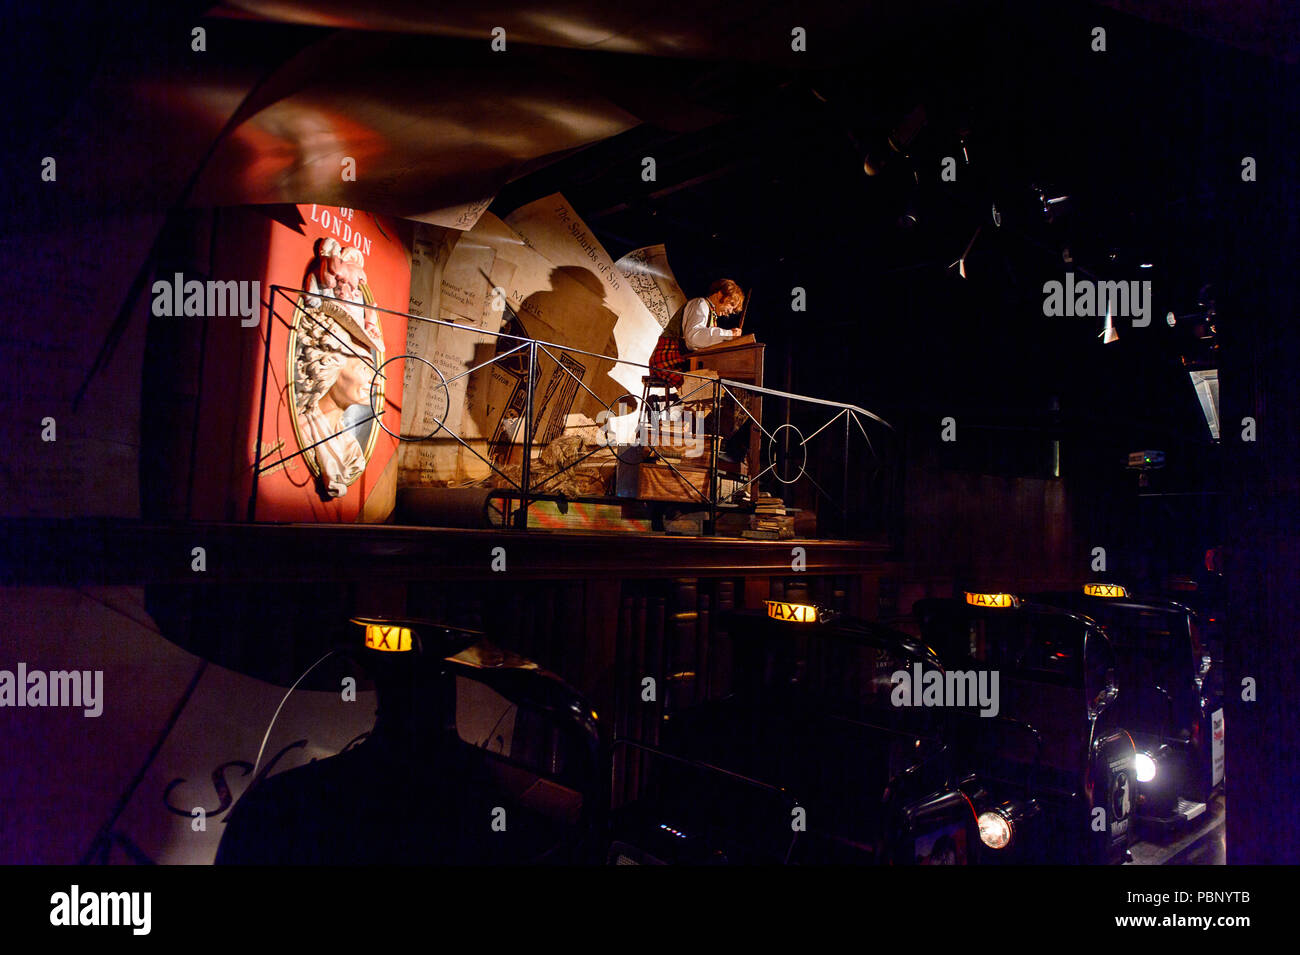 Londres, Angleterre - le 22 juillet 2016 : l'Esprit de Londres au musée de cire Madame Tussauds. C'est une attraction touristique majeure à Londres Banque D'Images